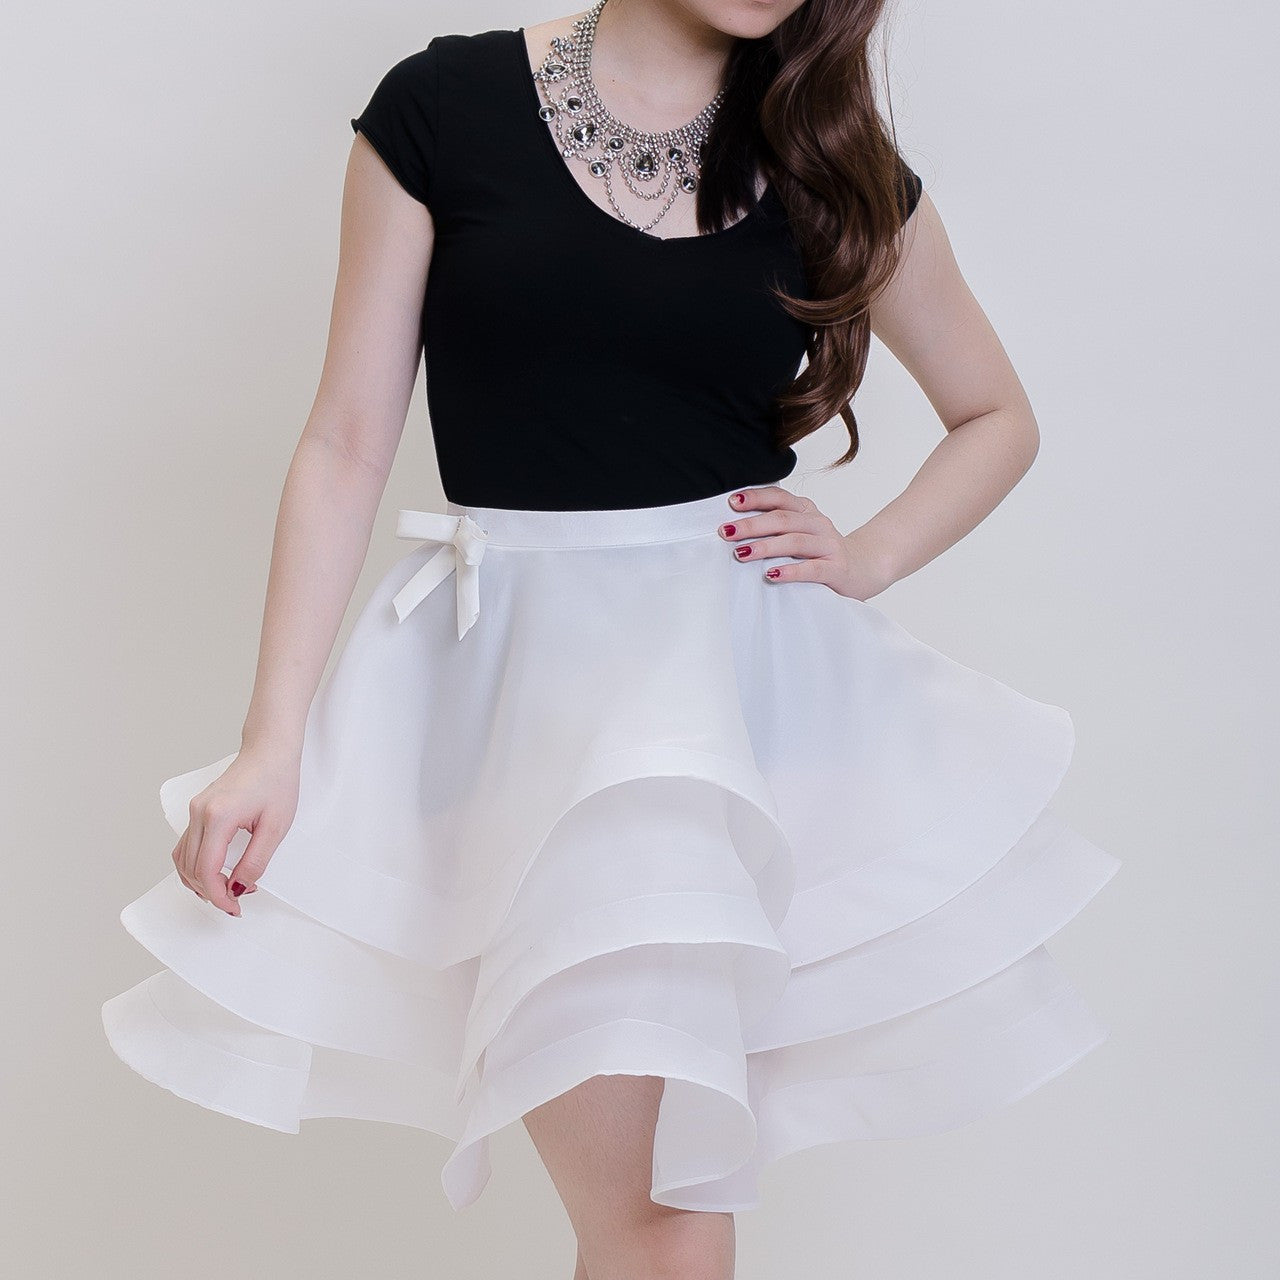 Ballerina Skirt White Royale Collier 